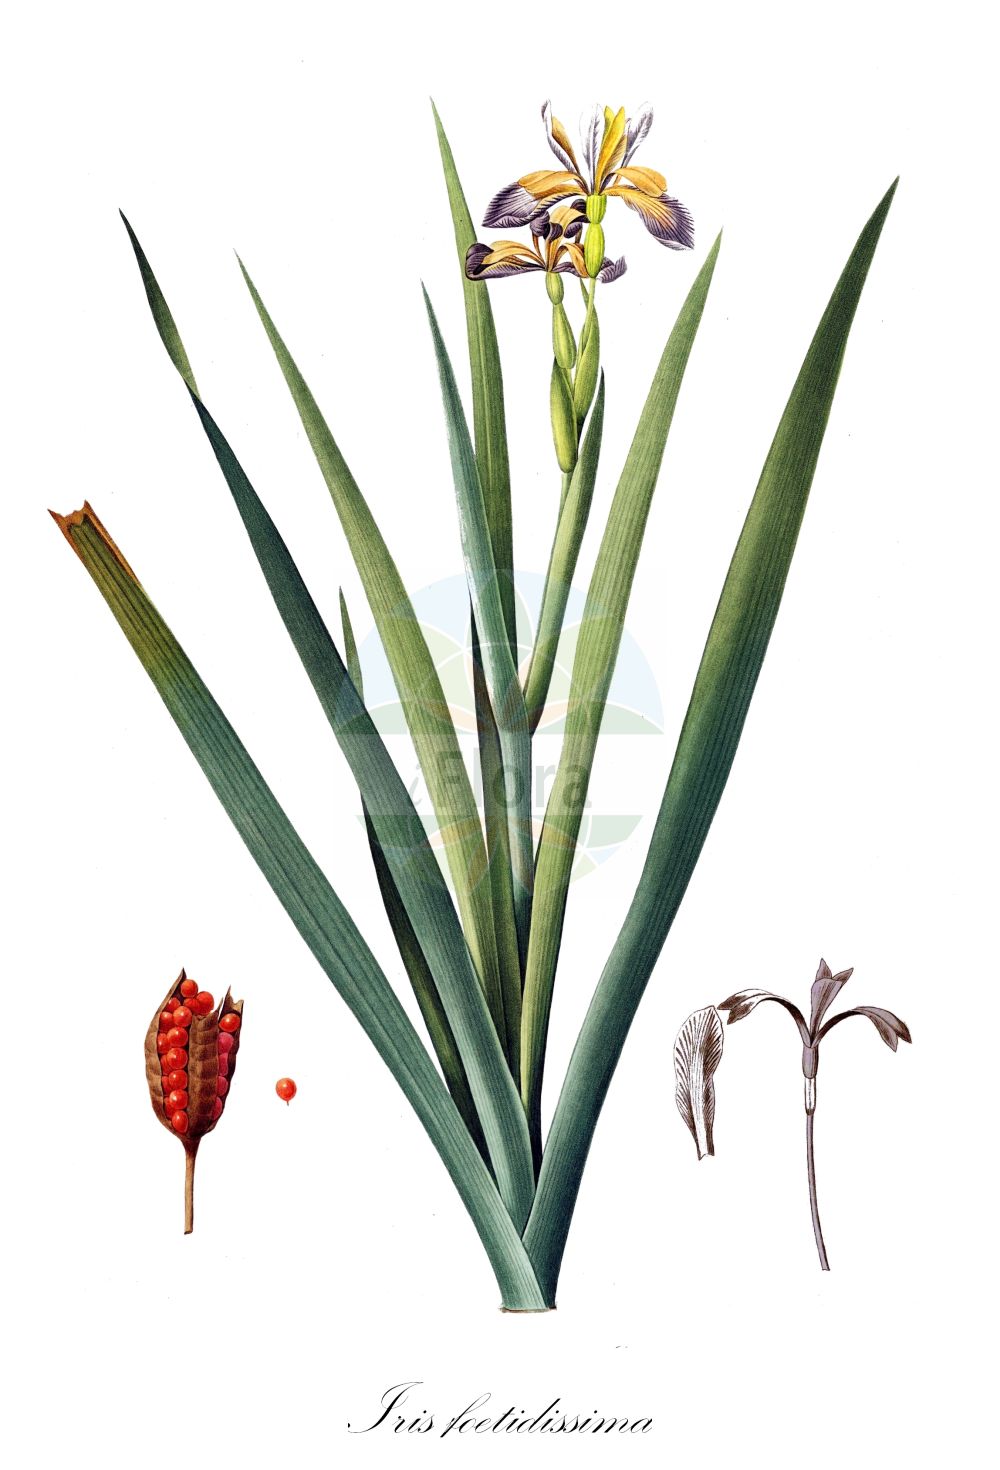 Historische Abbildung von Iris foetidissima (Stinking Iris). Das Bild zeigt Blatt, Bluete, Frucht und Same. ---- Historical Drawing of Iris foetidissima (Stinking Iris). The image is showing leaf, flower, fruit and seed.(Iris foetidissima,Stinking Iris,Chamaeiris foetida,Iris foetida,Iris foetidissima,Spathula foetidissima,Xiphion foetidissimum,Xyridion foetidissimum,Iris,Schwertlilie,Iris,Iridaceae,Schwertliliengewächse,Iris family,Blatt,Bluete,Frucht,Same,leaf,flower,fruit,seed,Redouté (1802-1816))